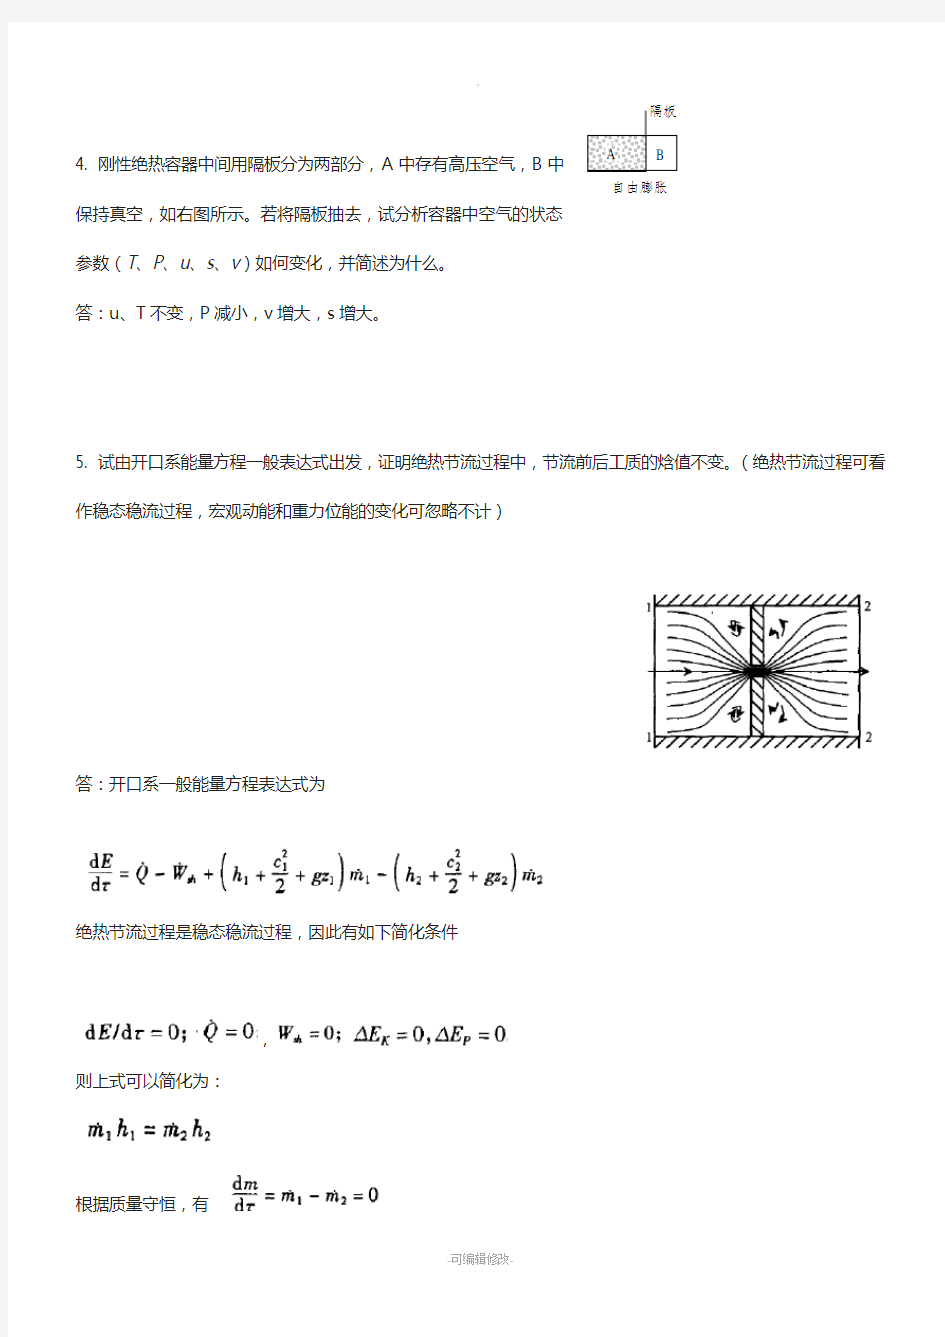 上海理工大学工程热力学试题-答案